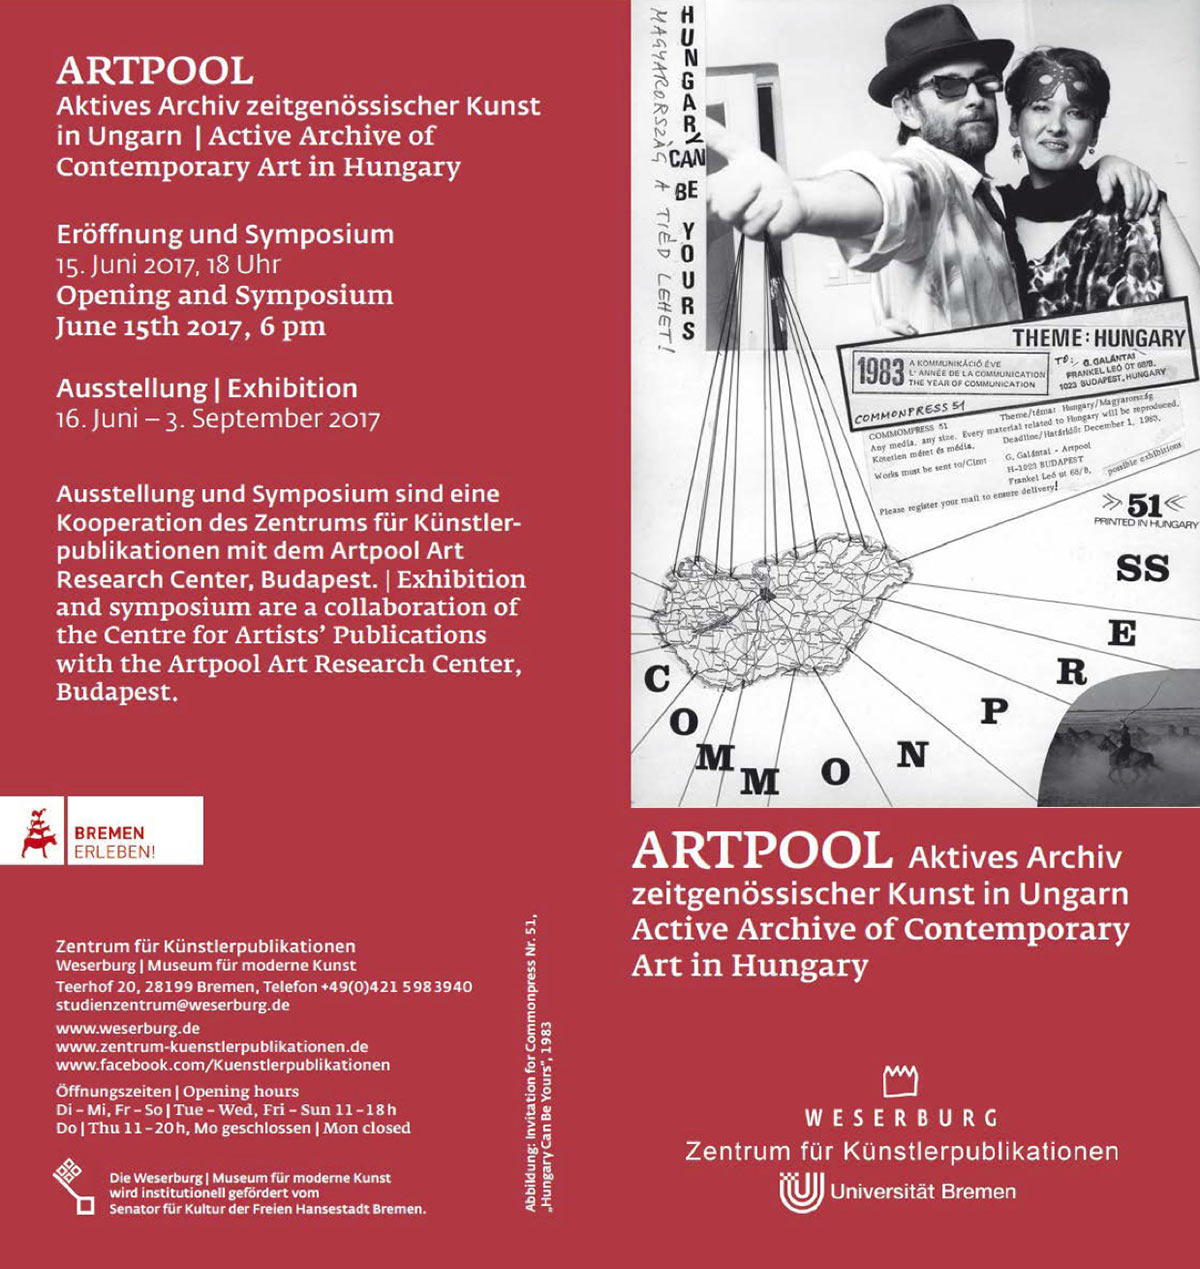 Artpool: Aktives Archiv zeitgenössischer Kunst in Ungarn flyer, Studienzentrum für Künstlerpublikationen, Bréma, Németország, 2017.